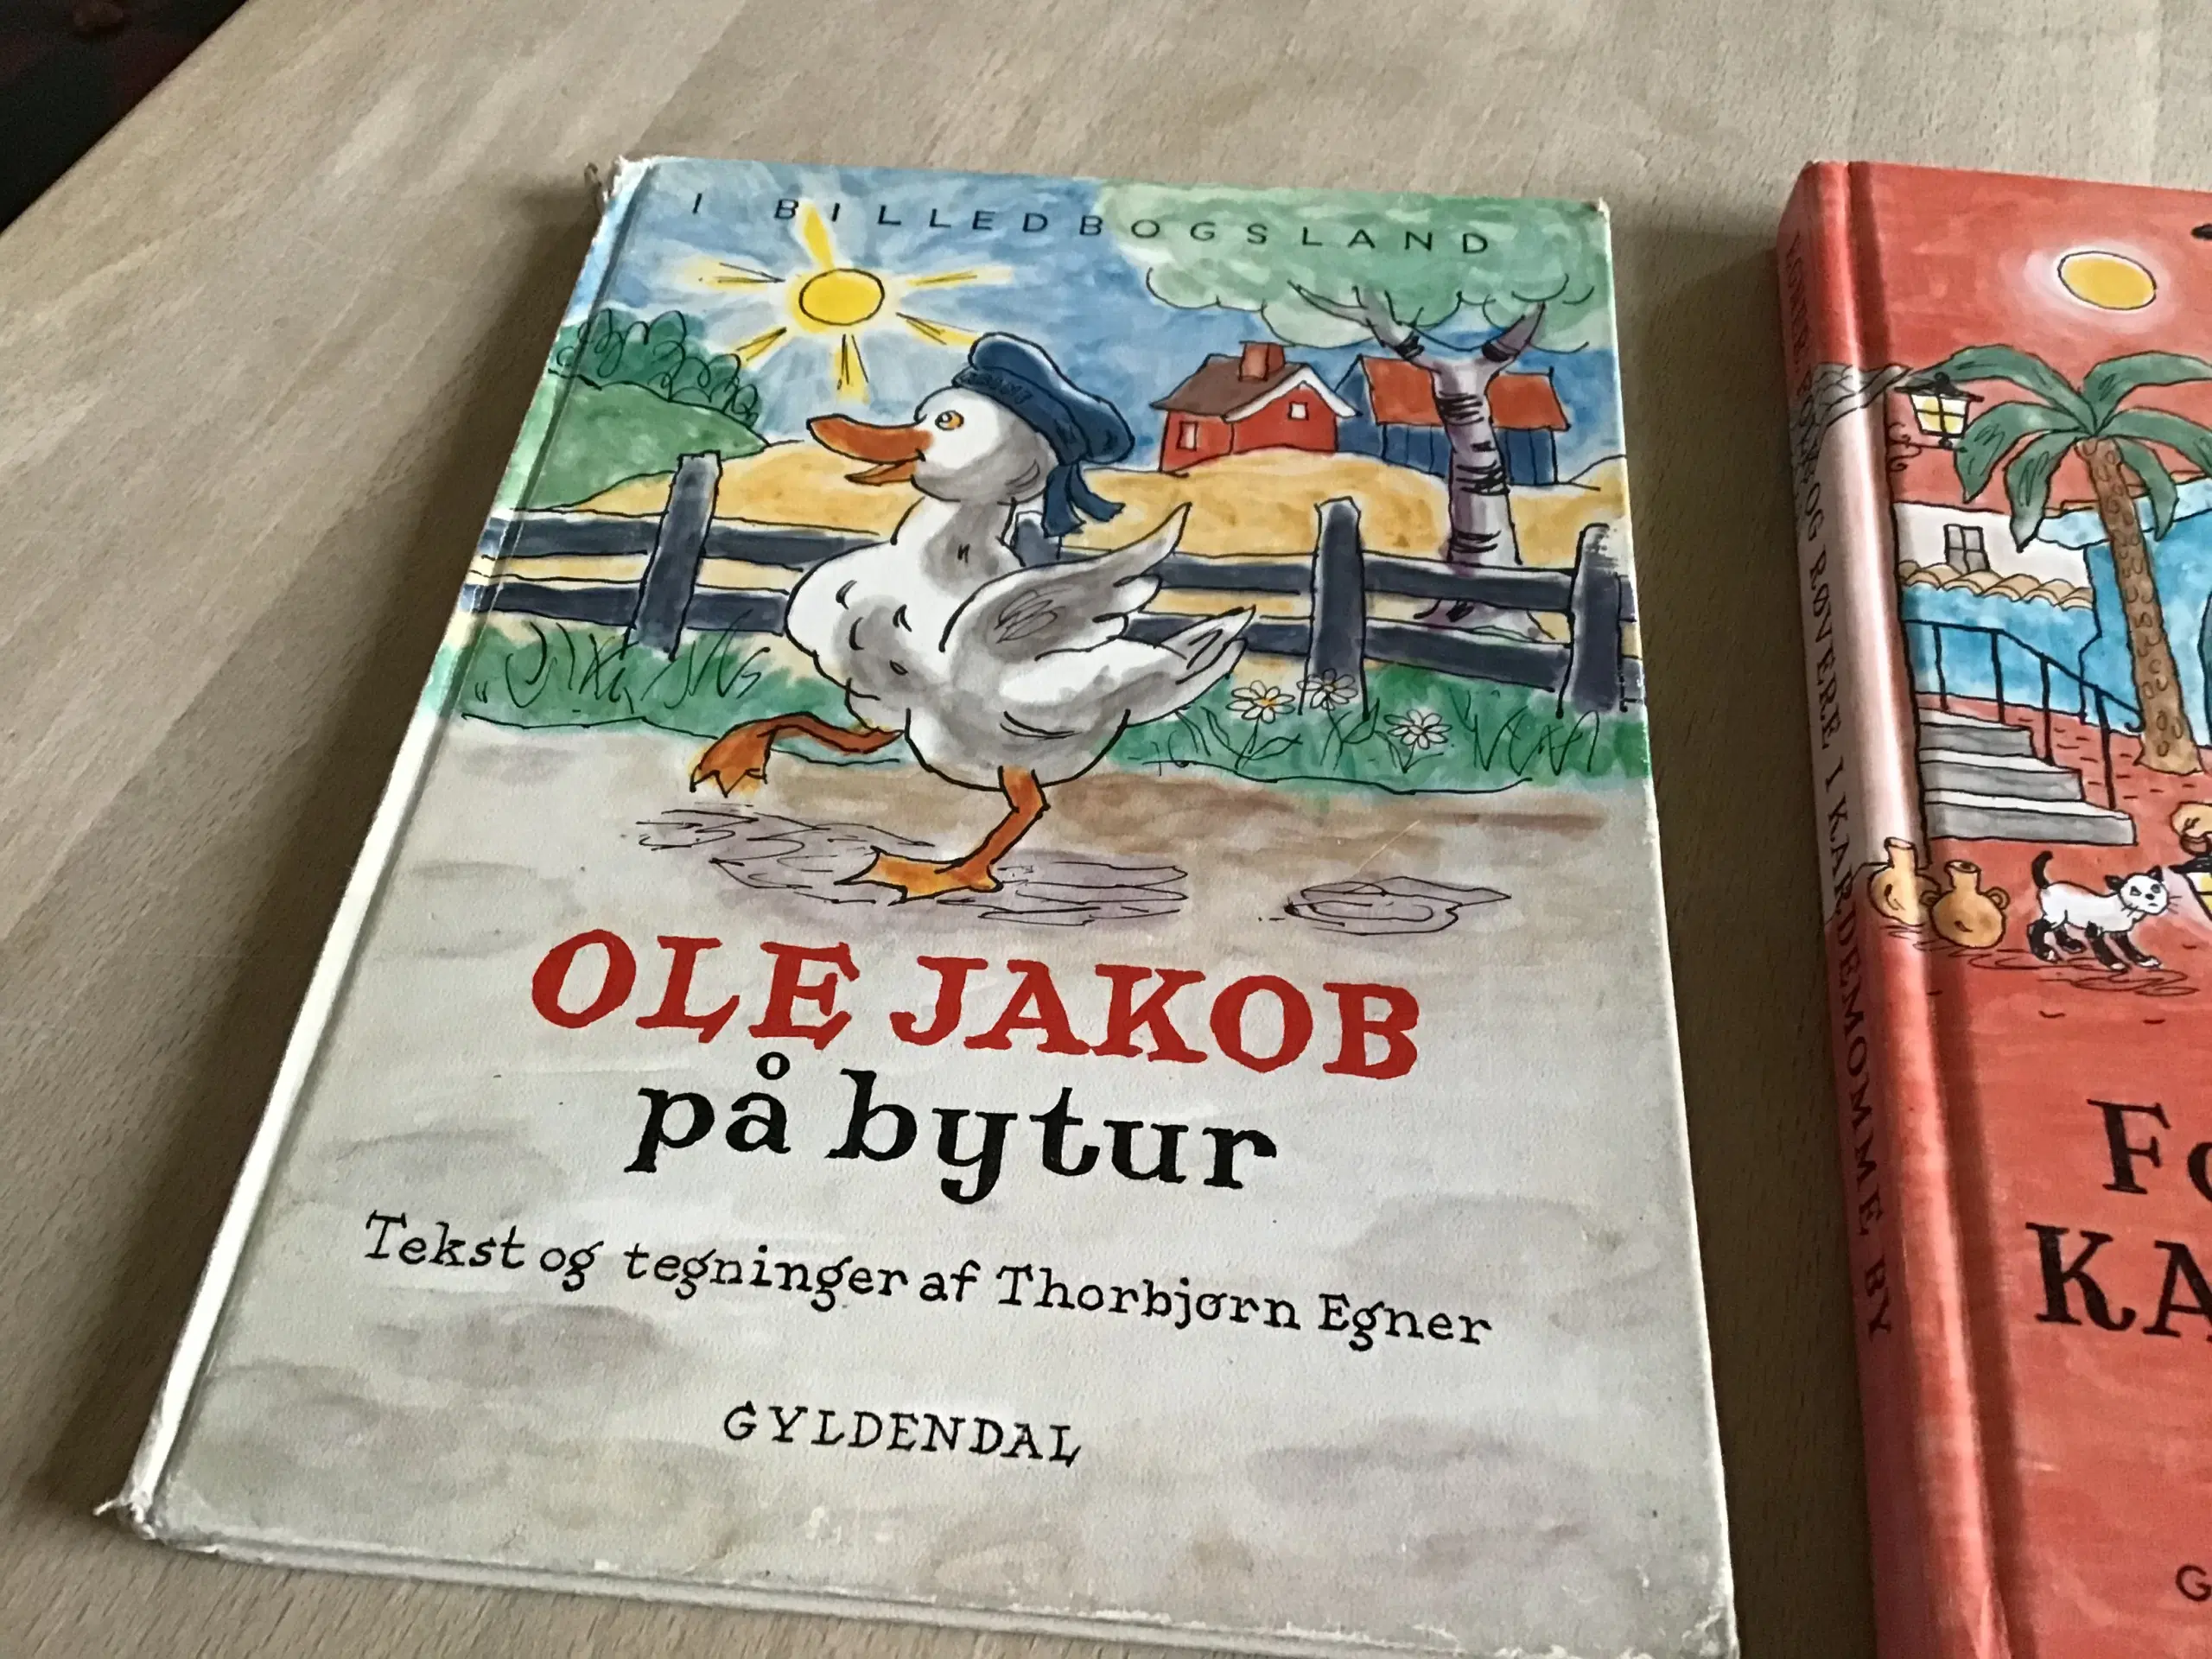 Thorbjørn Egner bøger pr stk 30kr